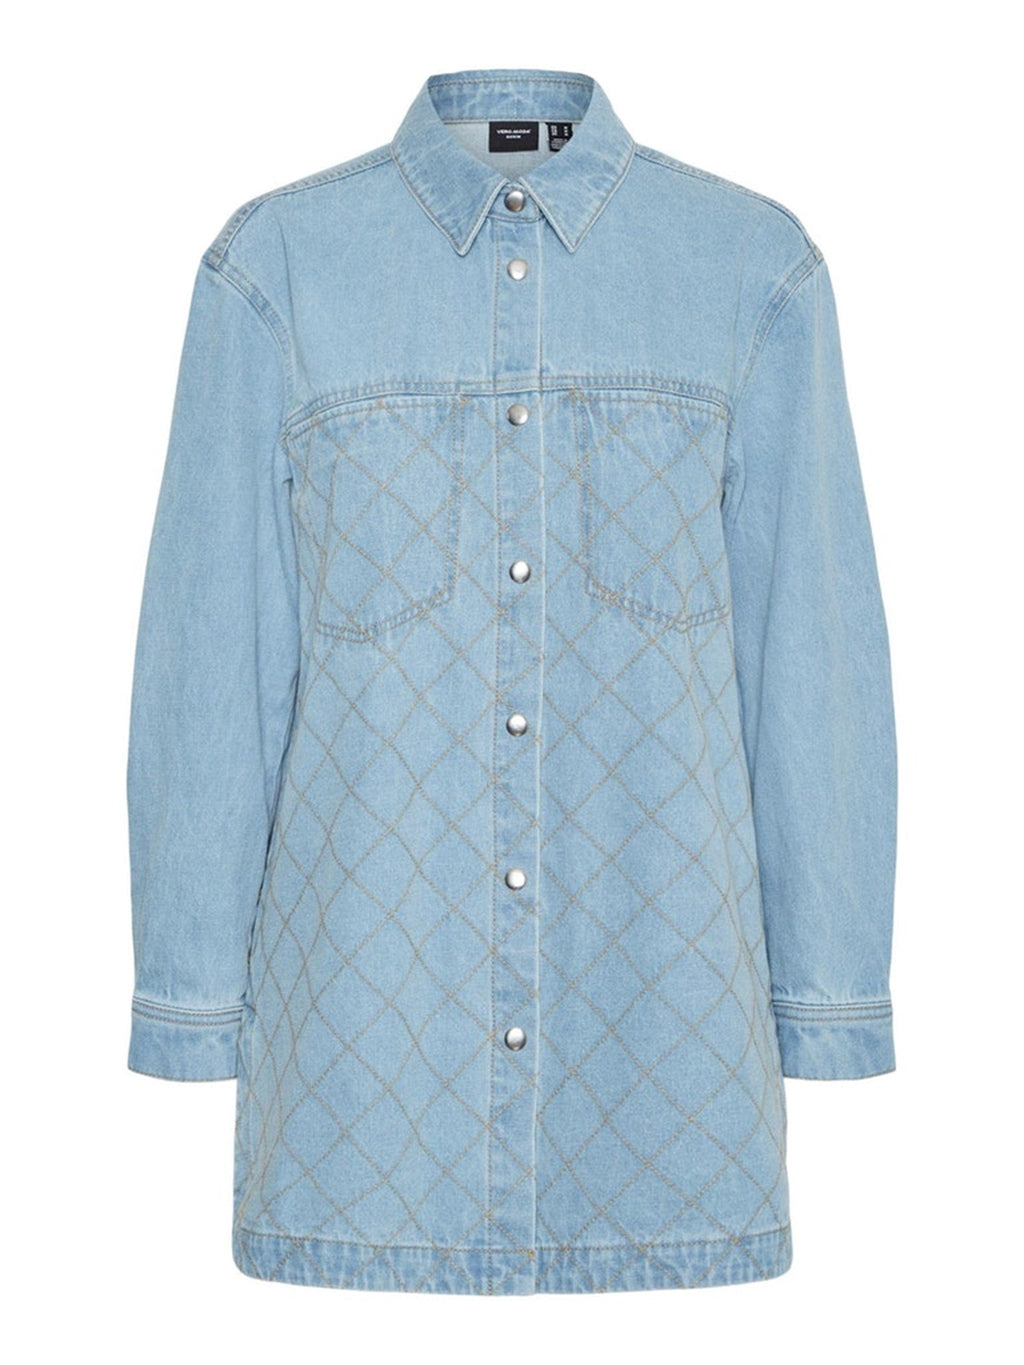 „Mayla Denim“ marškinėliai - šviesiai mėlynas džinsinis audinys